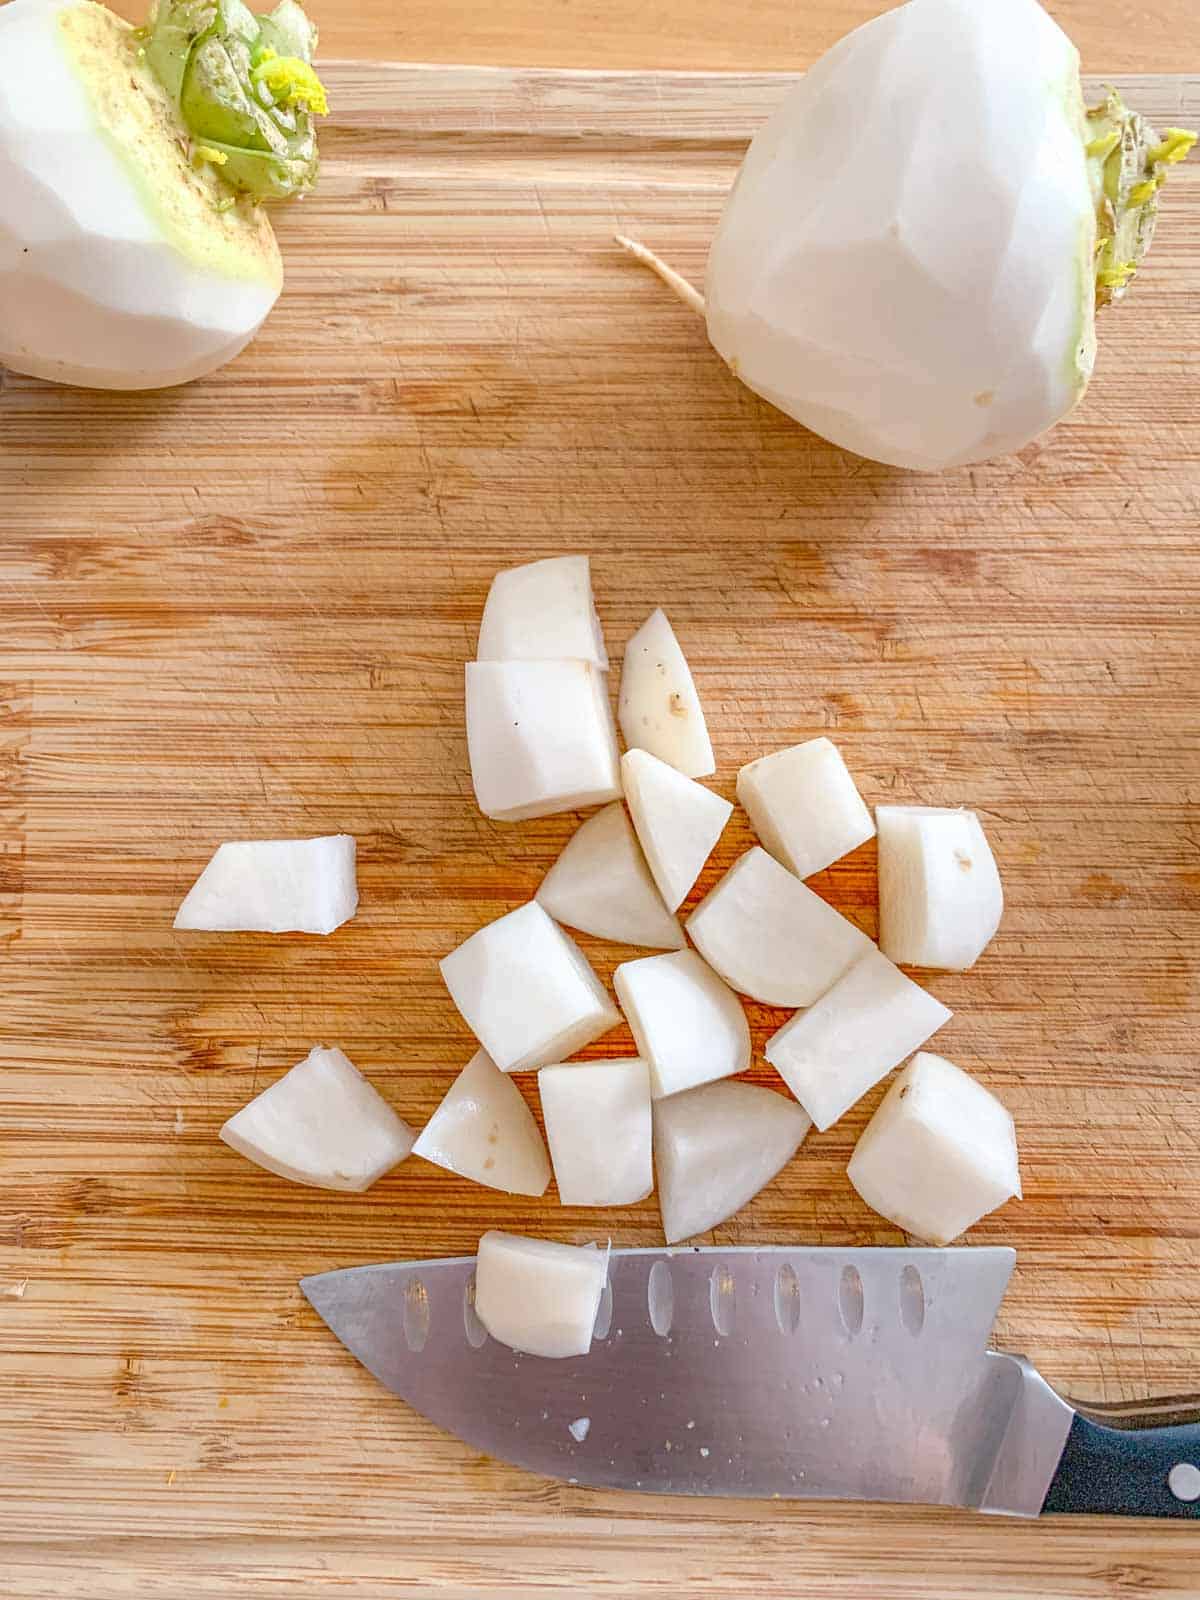 diced turnips on cutting board